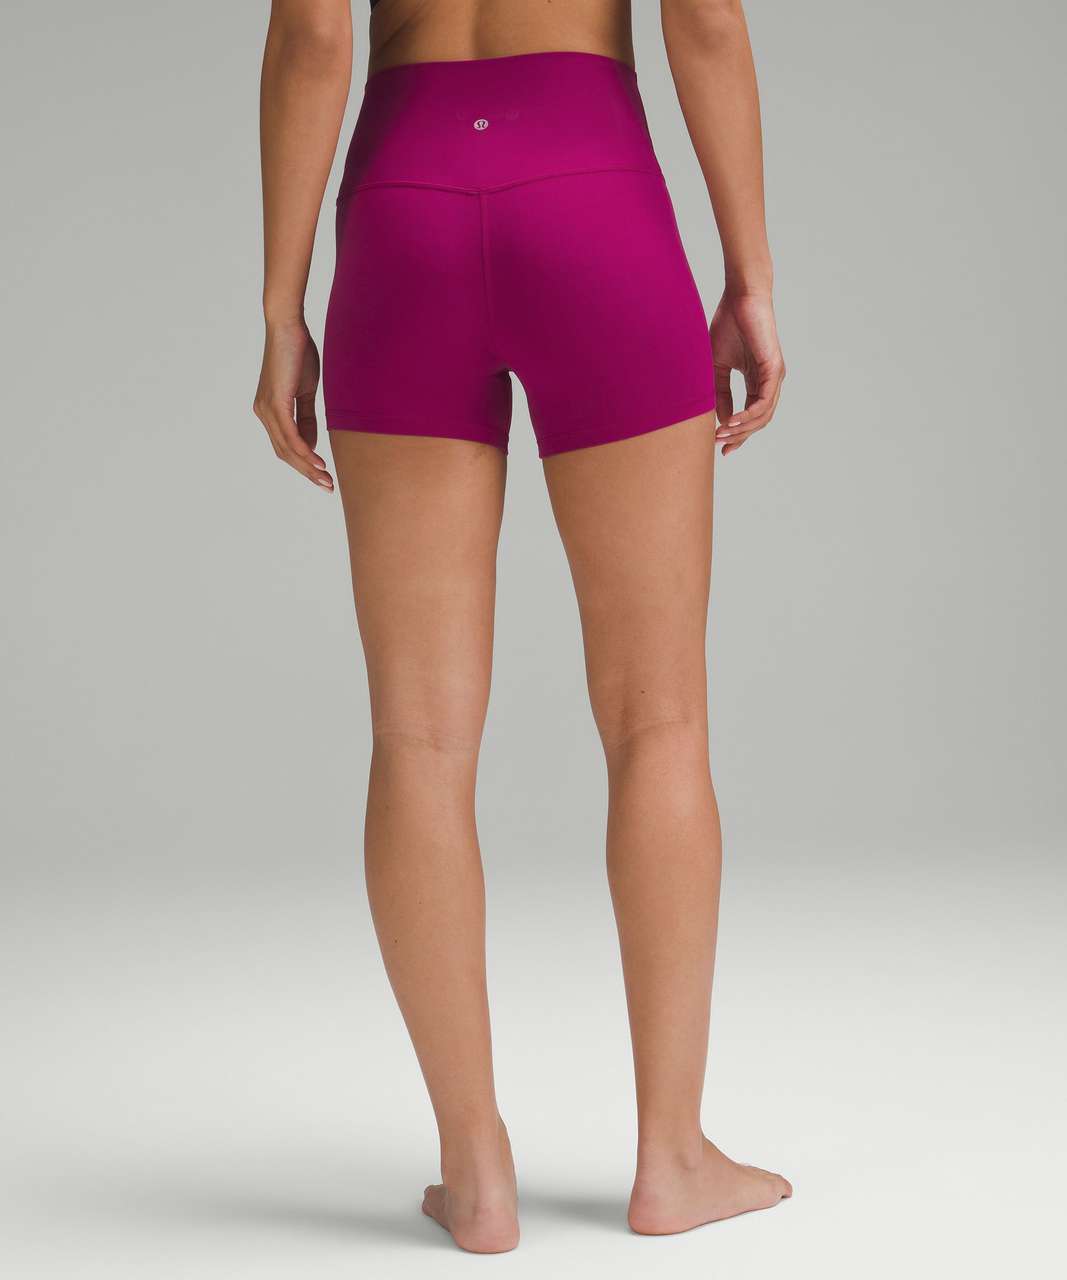 lululemon Align™ High-Rise Short 4, Women's Shorts, lululemon